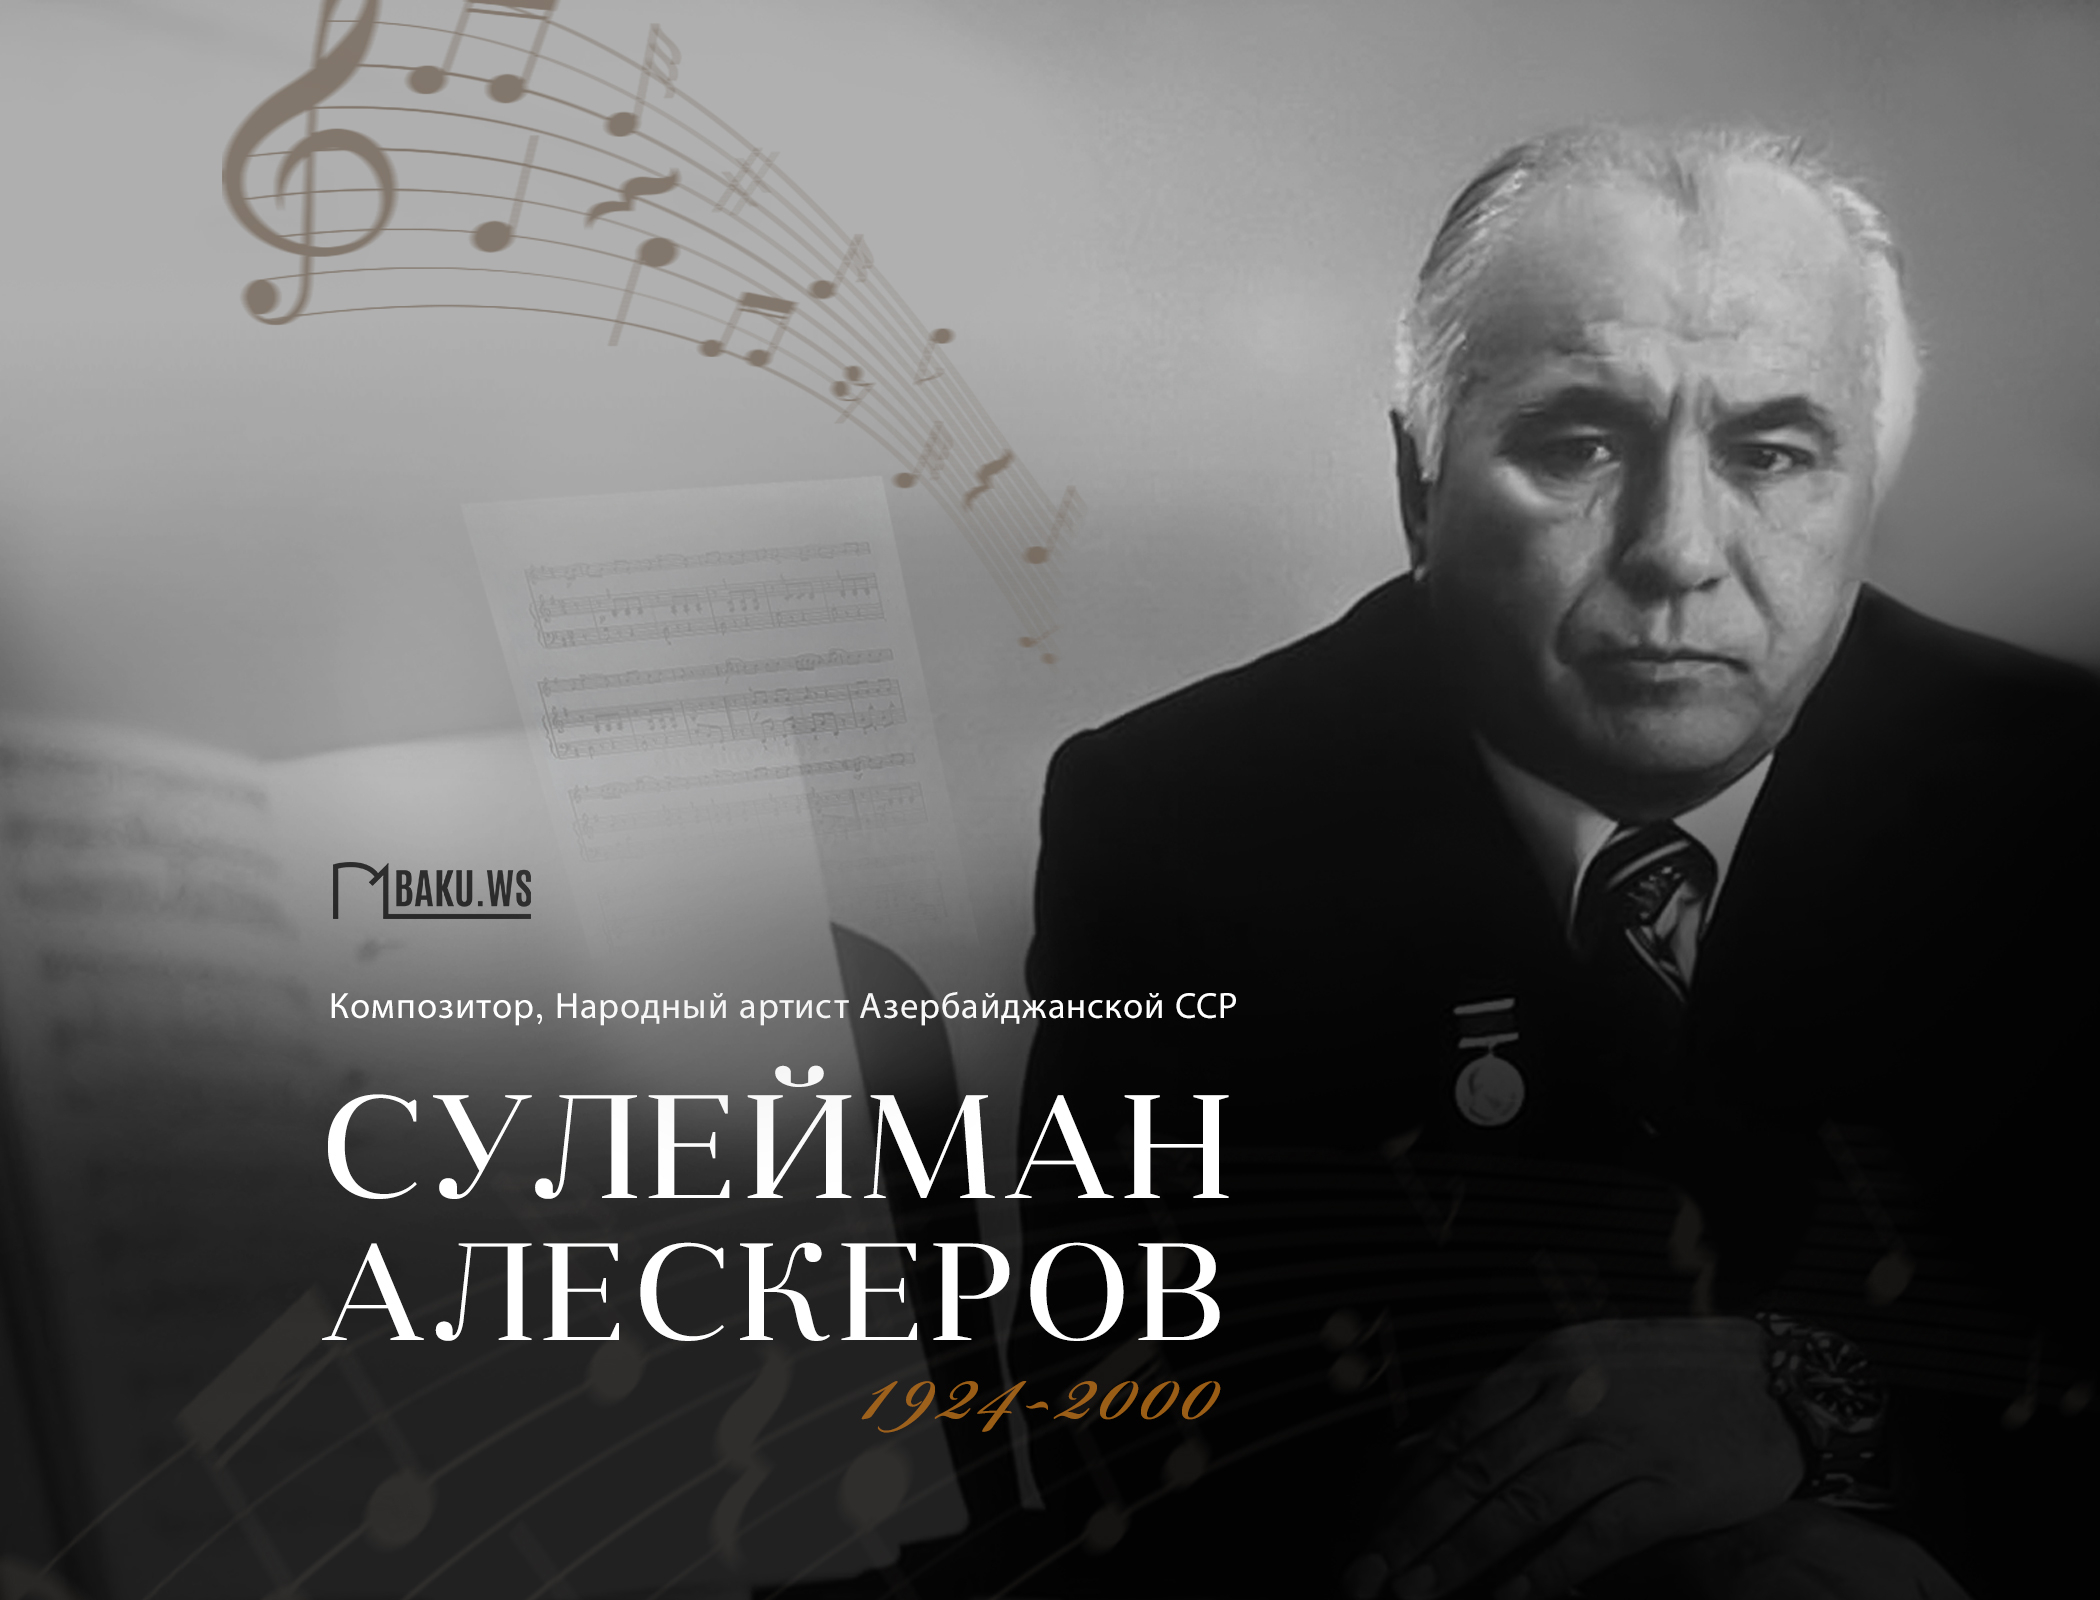 Сегодня исполняется 99 лет со дня рождения Сулеймана Алескерова